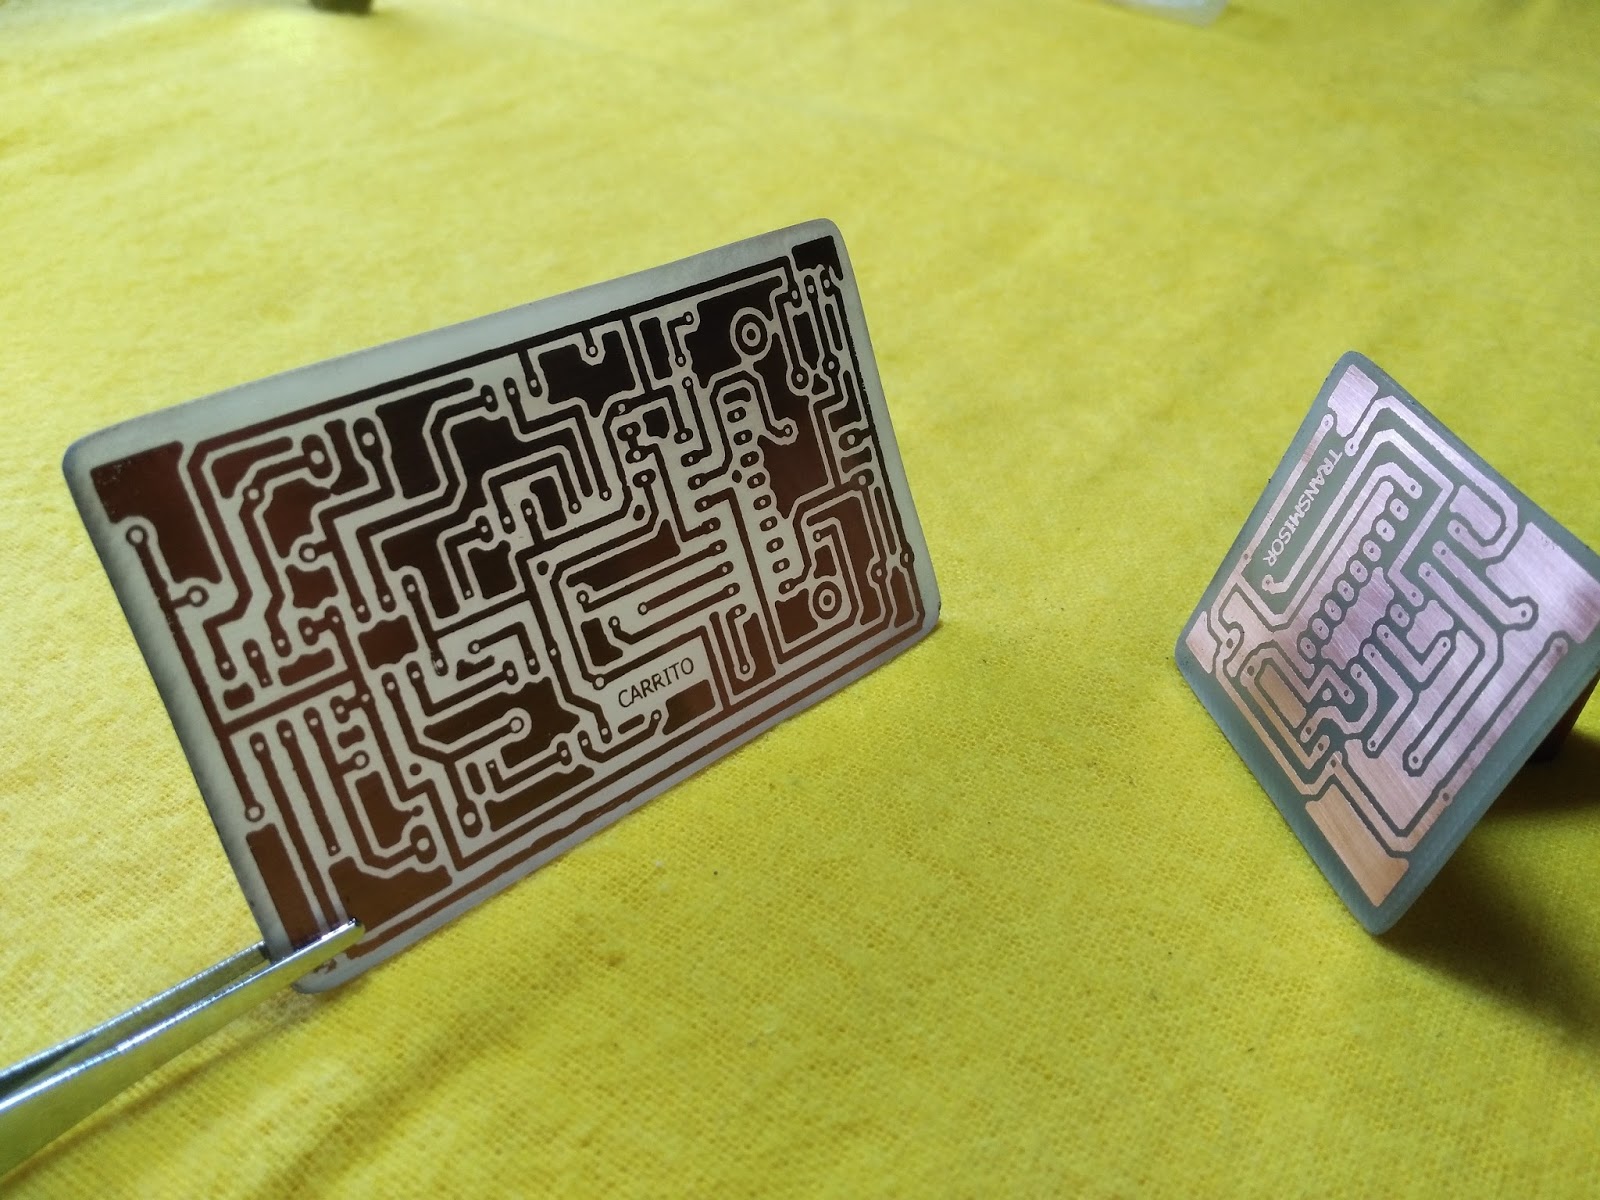 Humildad hemisferio encerrar Como hacer circuitos impresos con el método de planchado.